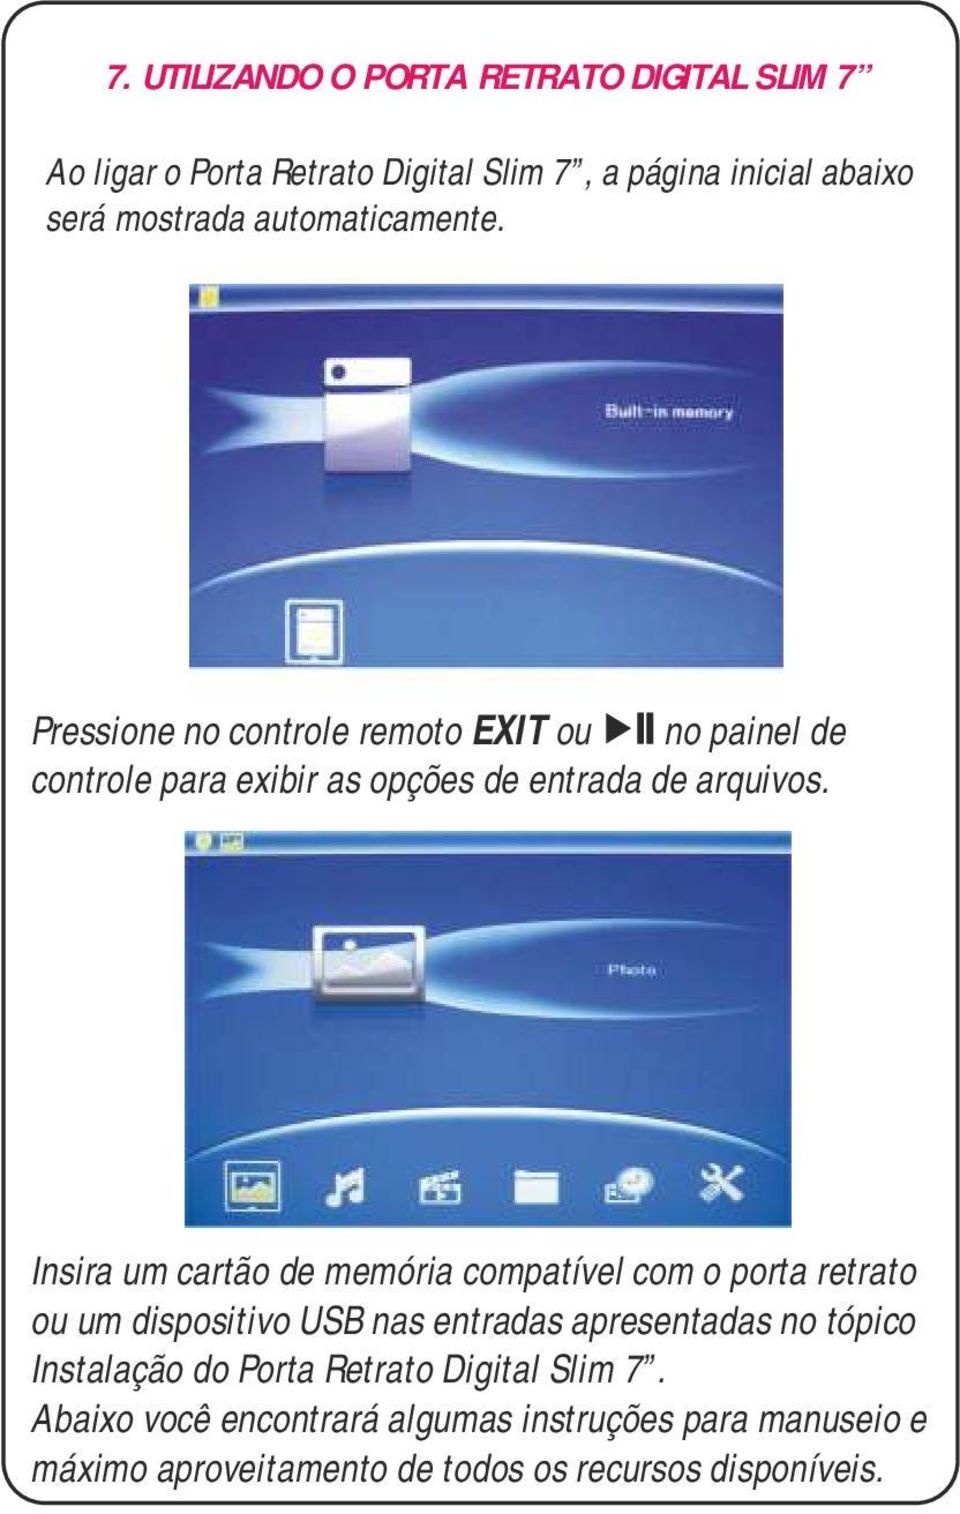 Insira um cartão de memória compatível com o porta retrato ou um dispositivo USB nas entradas apresentadas no tópico Instalação